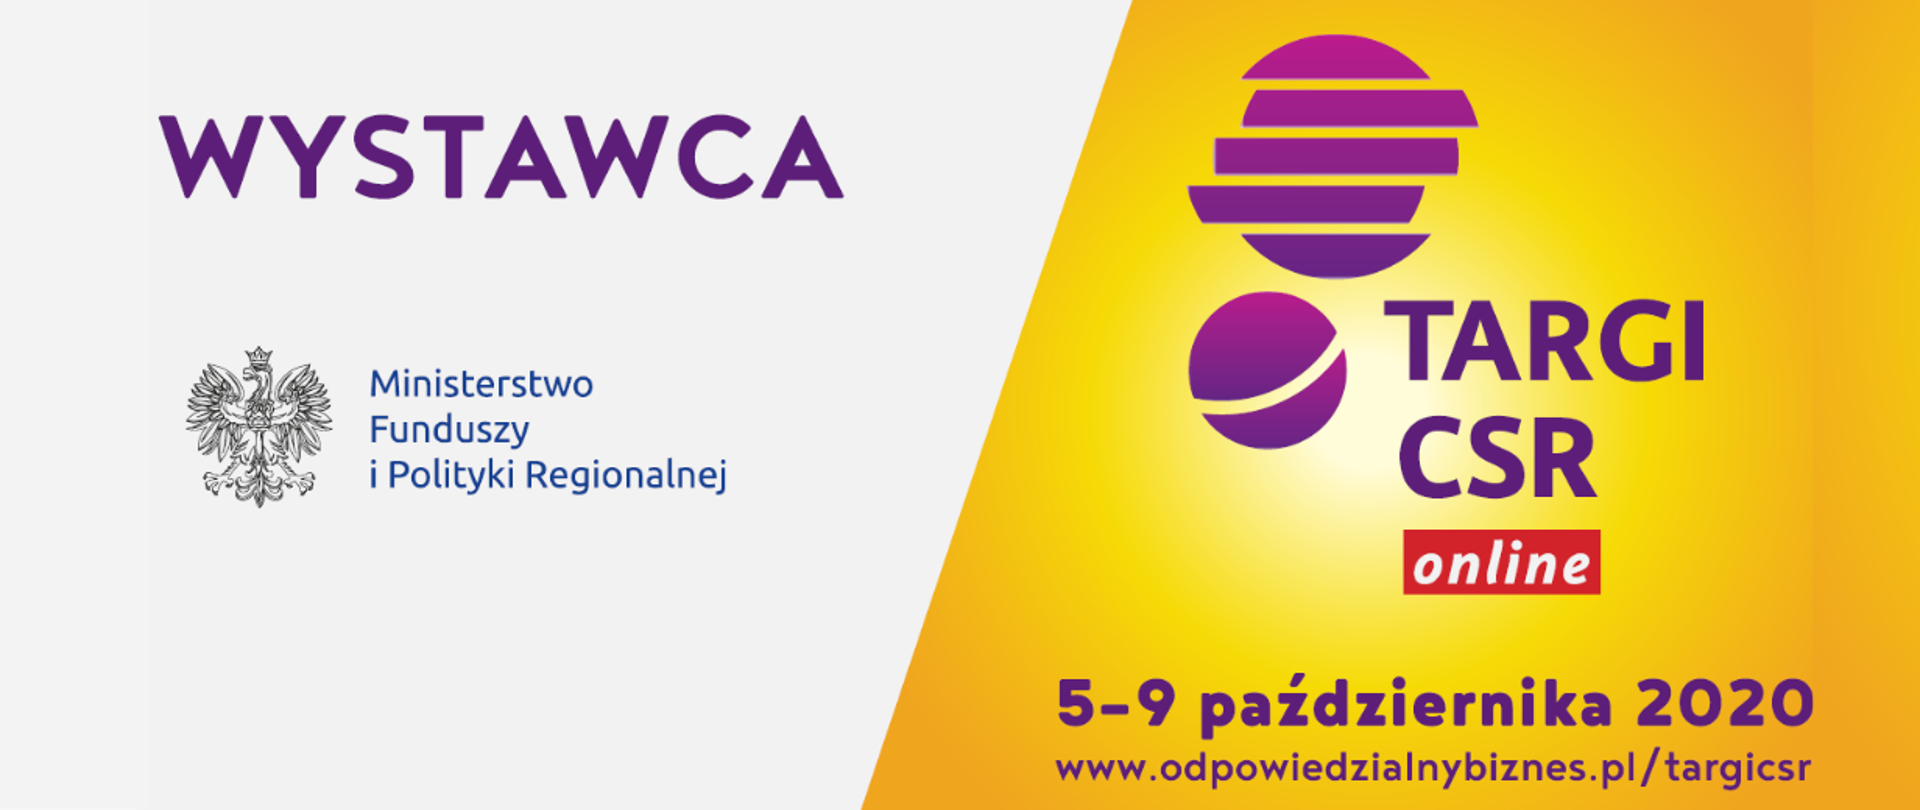 Napis: Wystawca Ministerstwo Funduszy i Polityki Regionalnej (logo). Obok logo Targów CSR online, 5-9 października 2020, www.odpowiedzialnybiznes.pl/targicsr